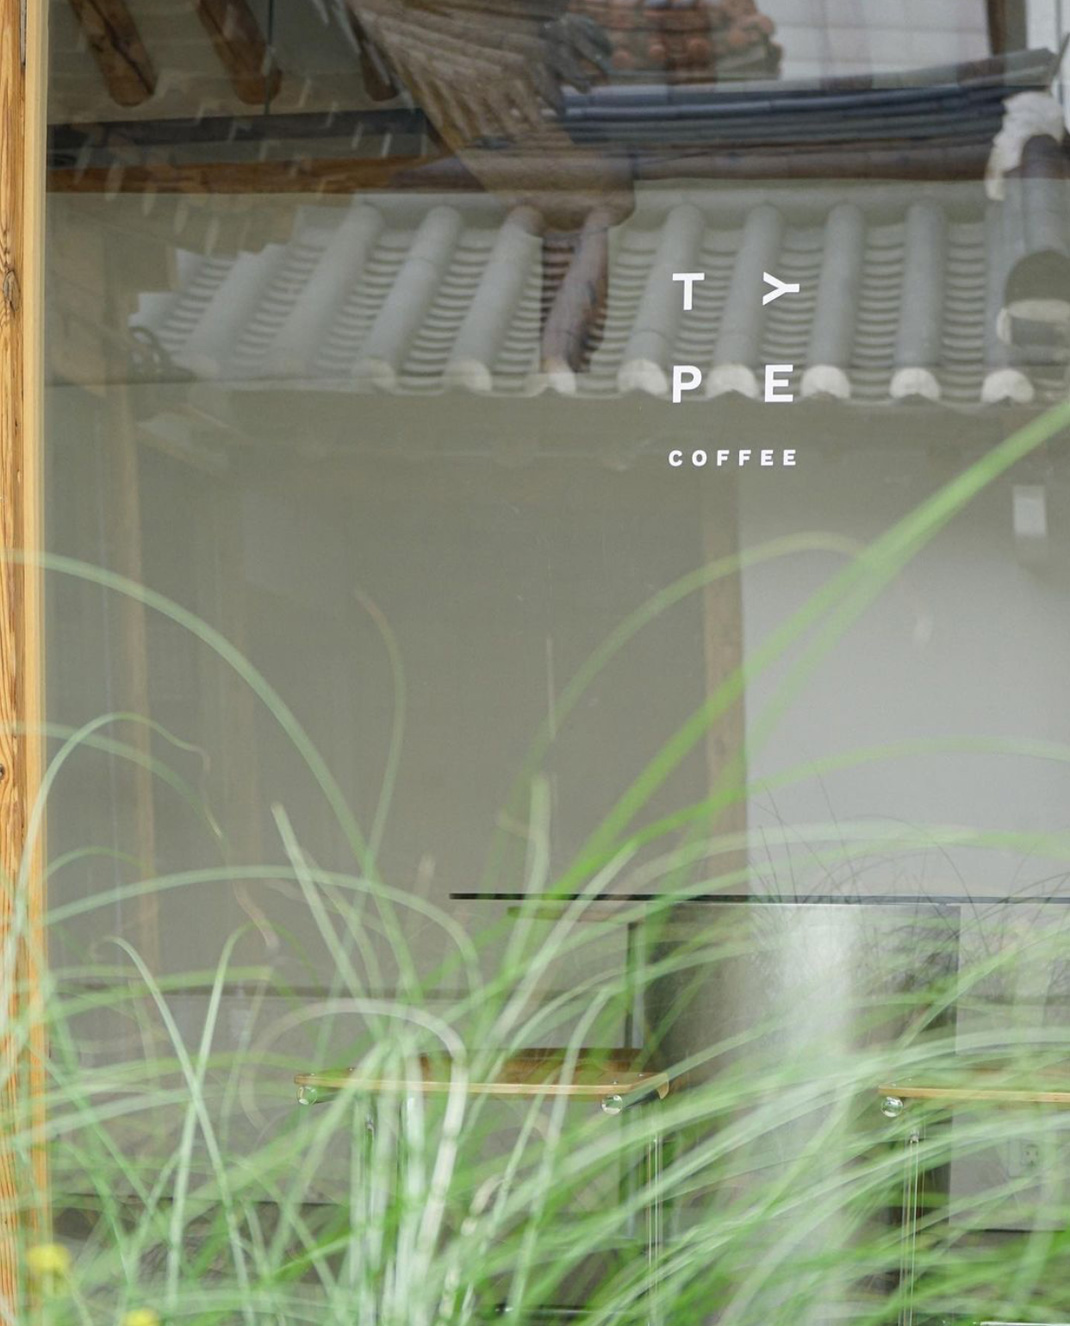 咖啡馆TYPE COFFEE 韩国 咖啡店 复古 老木头 logo设计 vi设计 空间设计